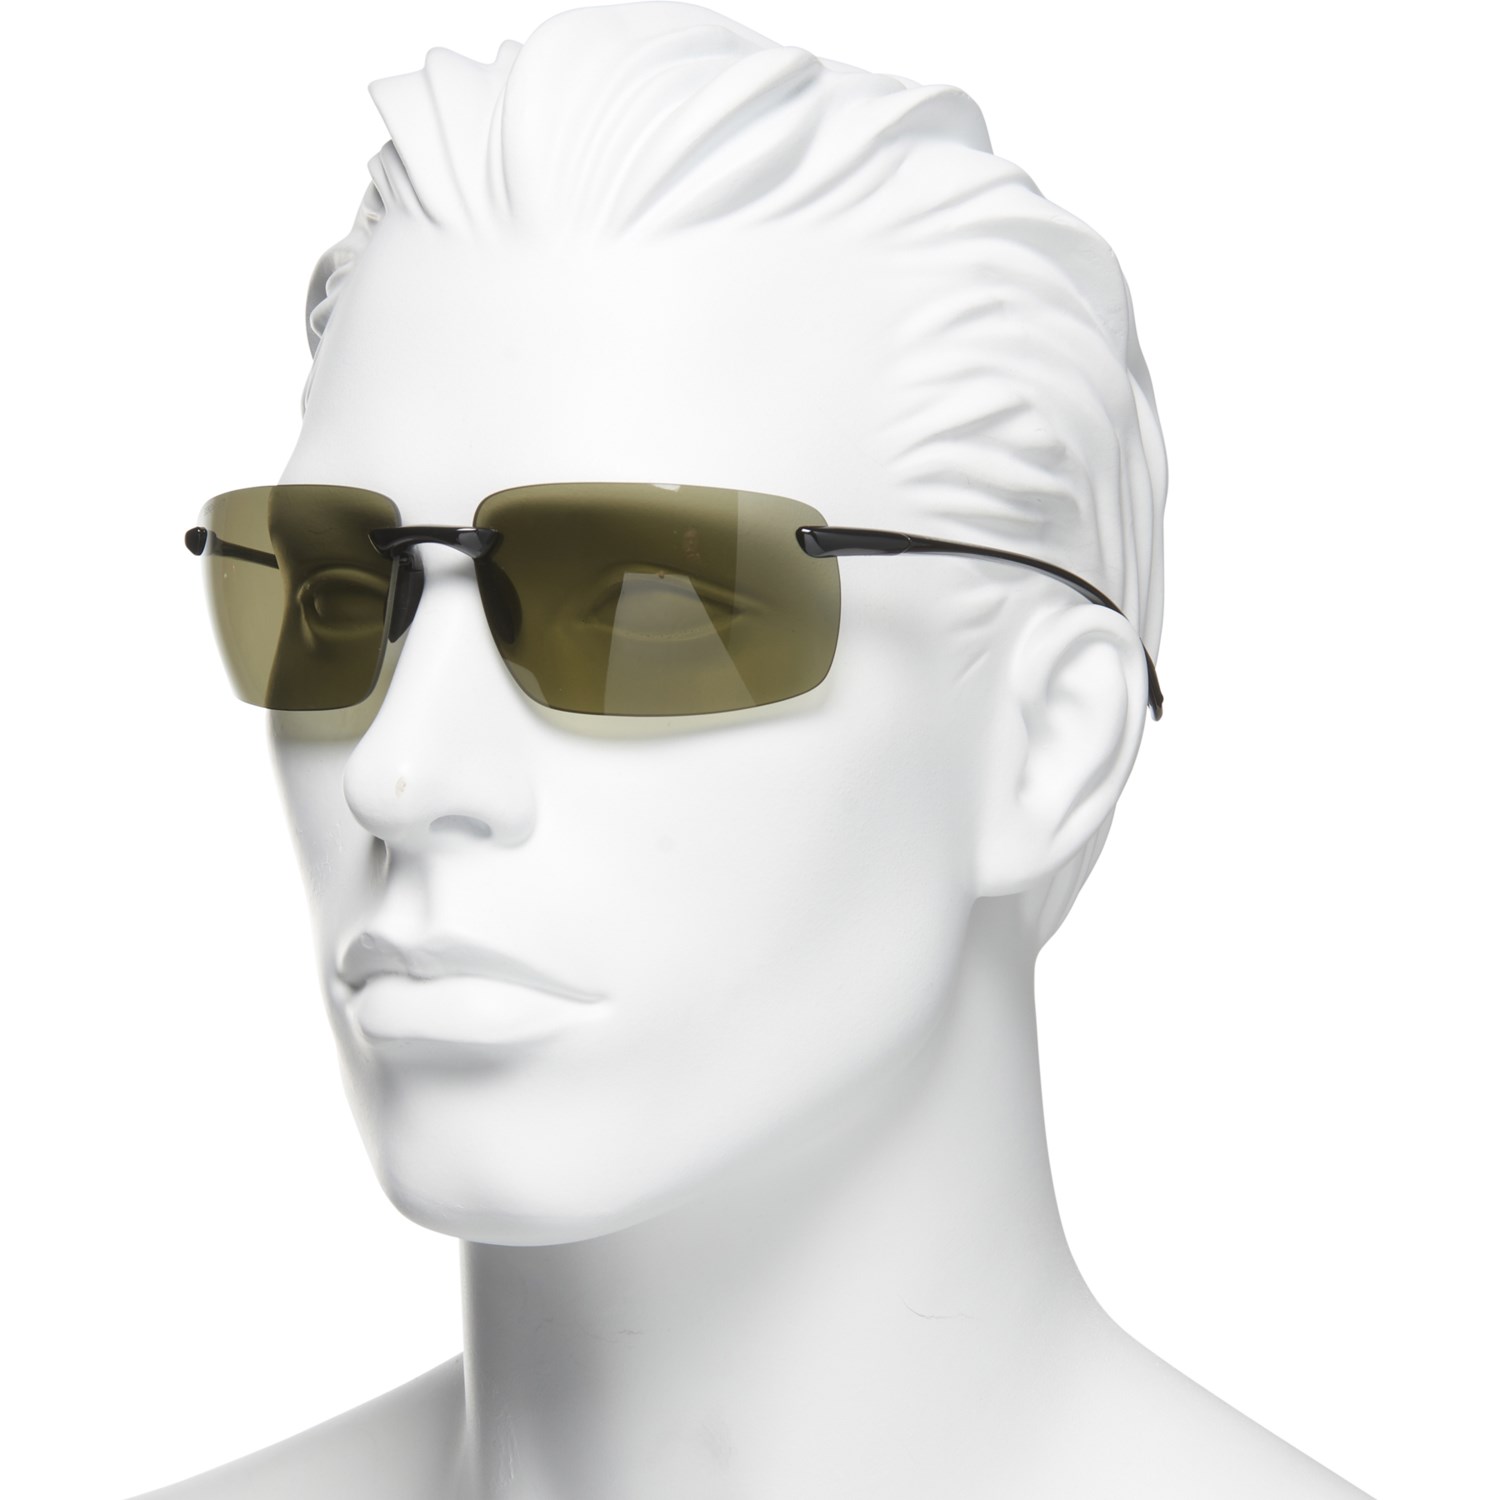 Serengeti Silio Sunglasses (For Men) - Save 57%